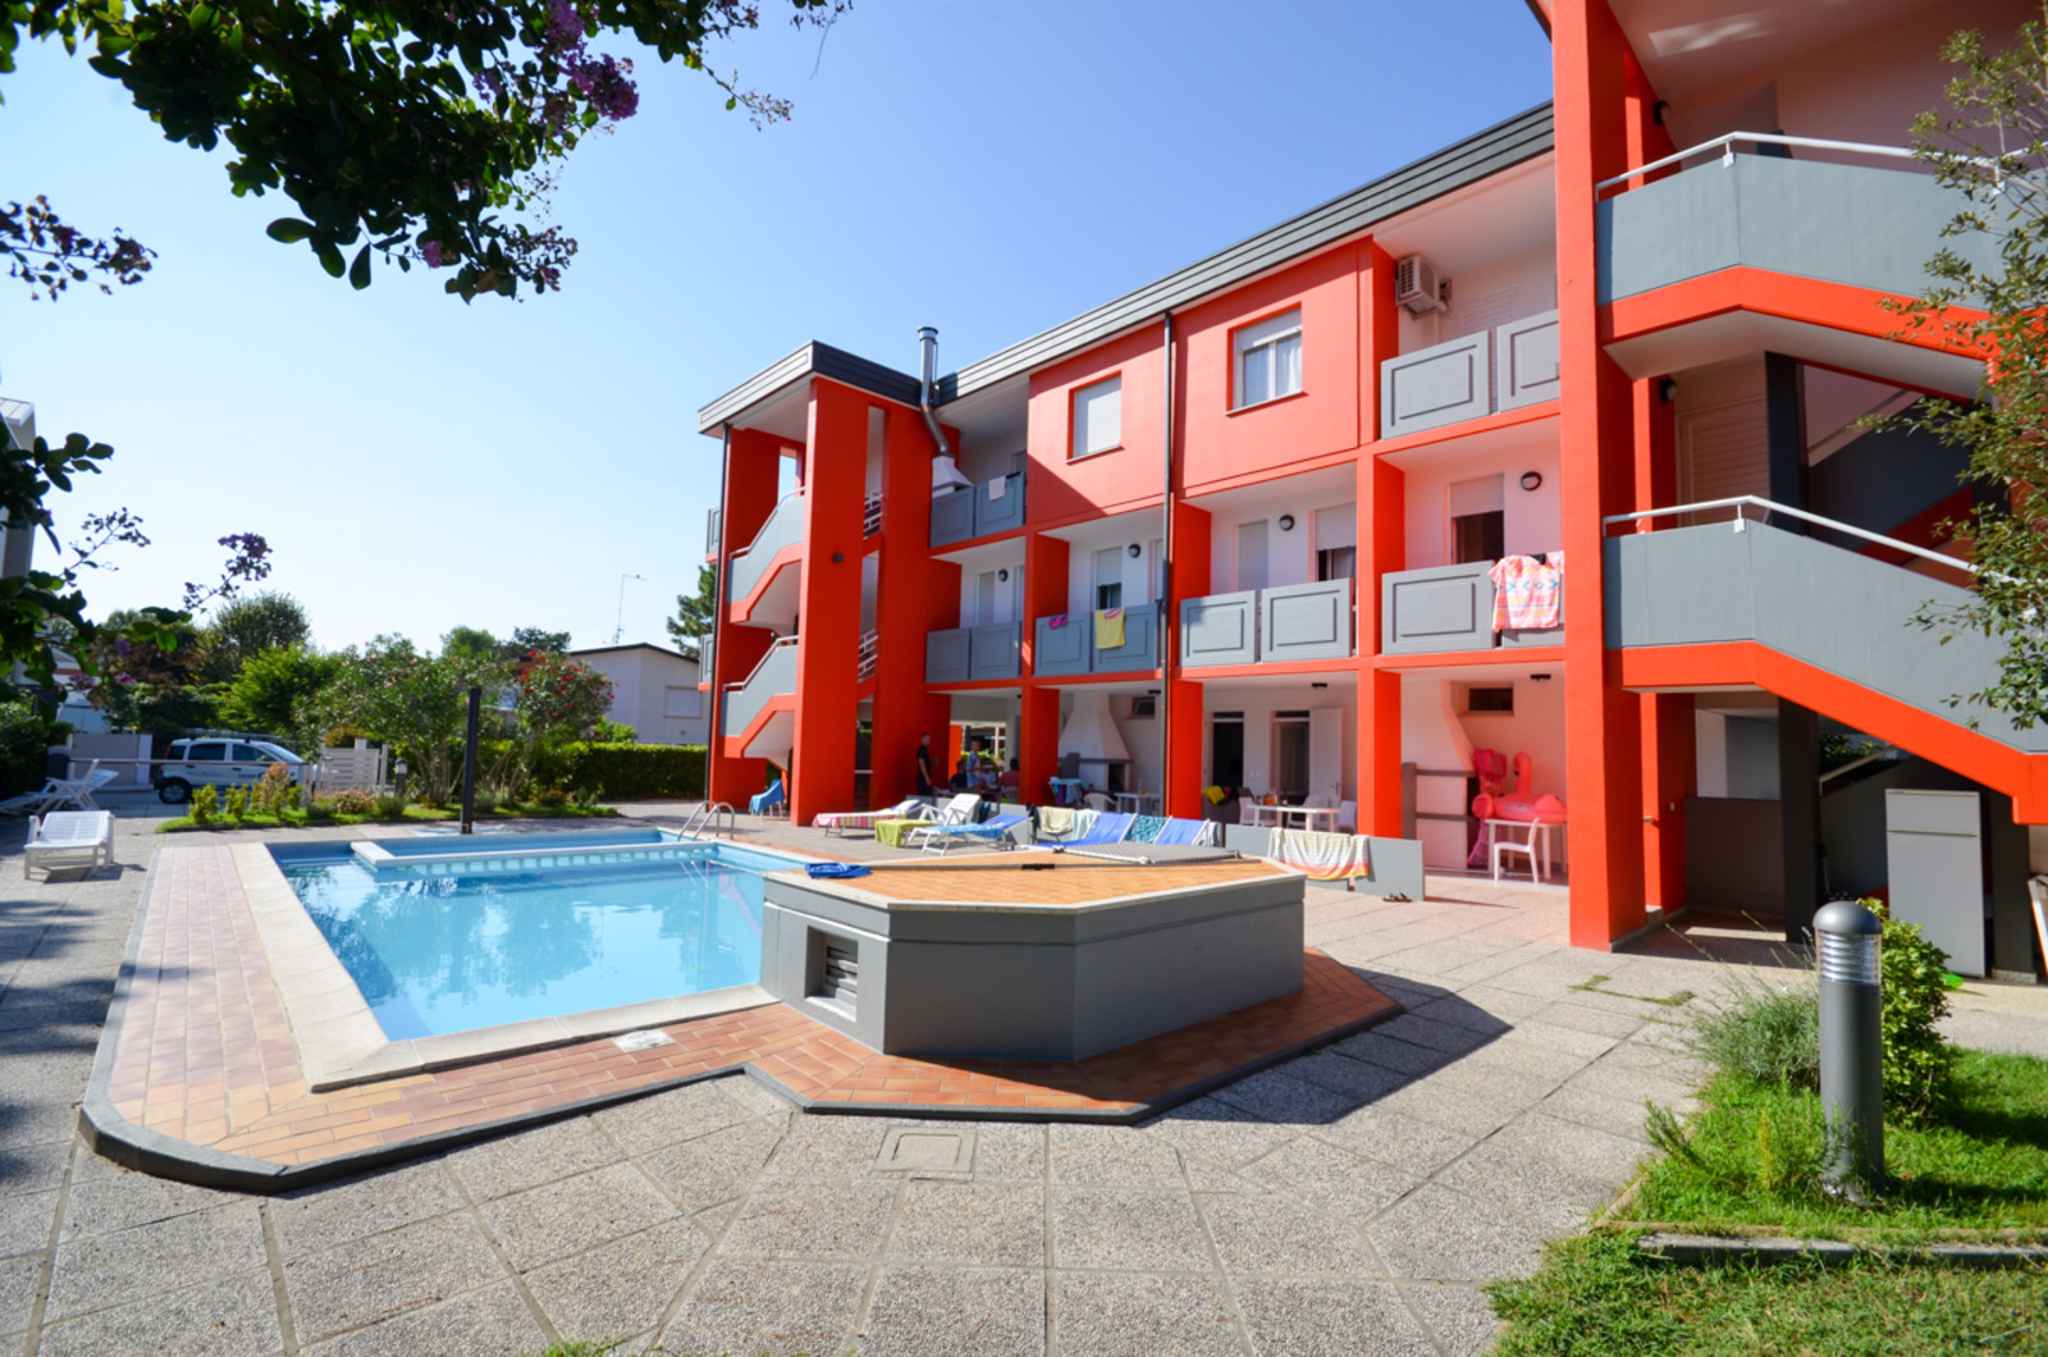 Ferienwohnung in moderner Residenz mit Pool